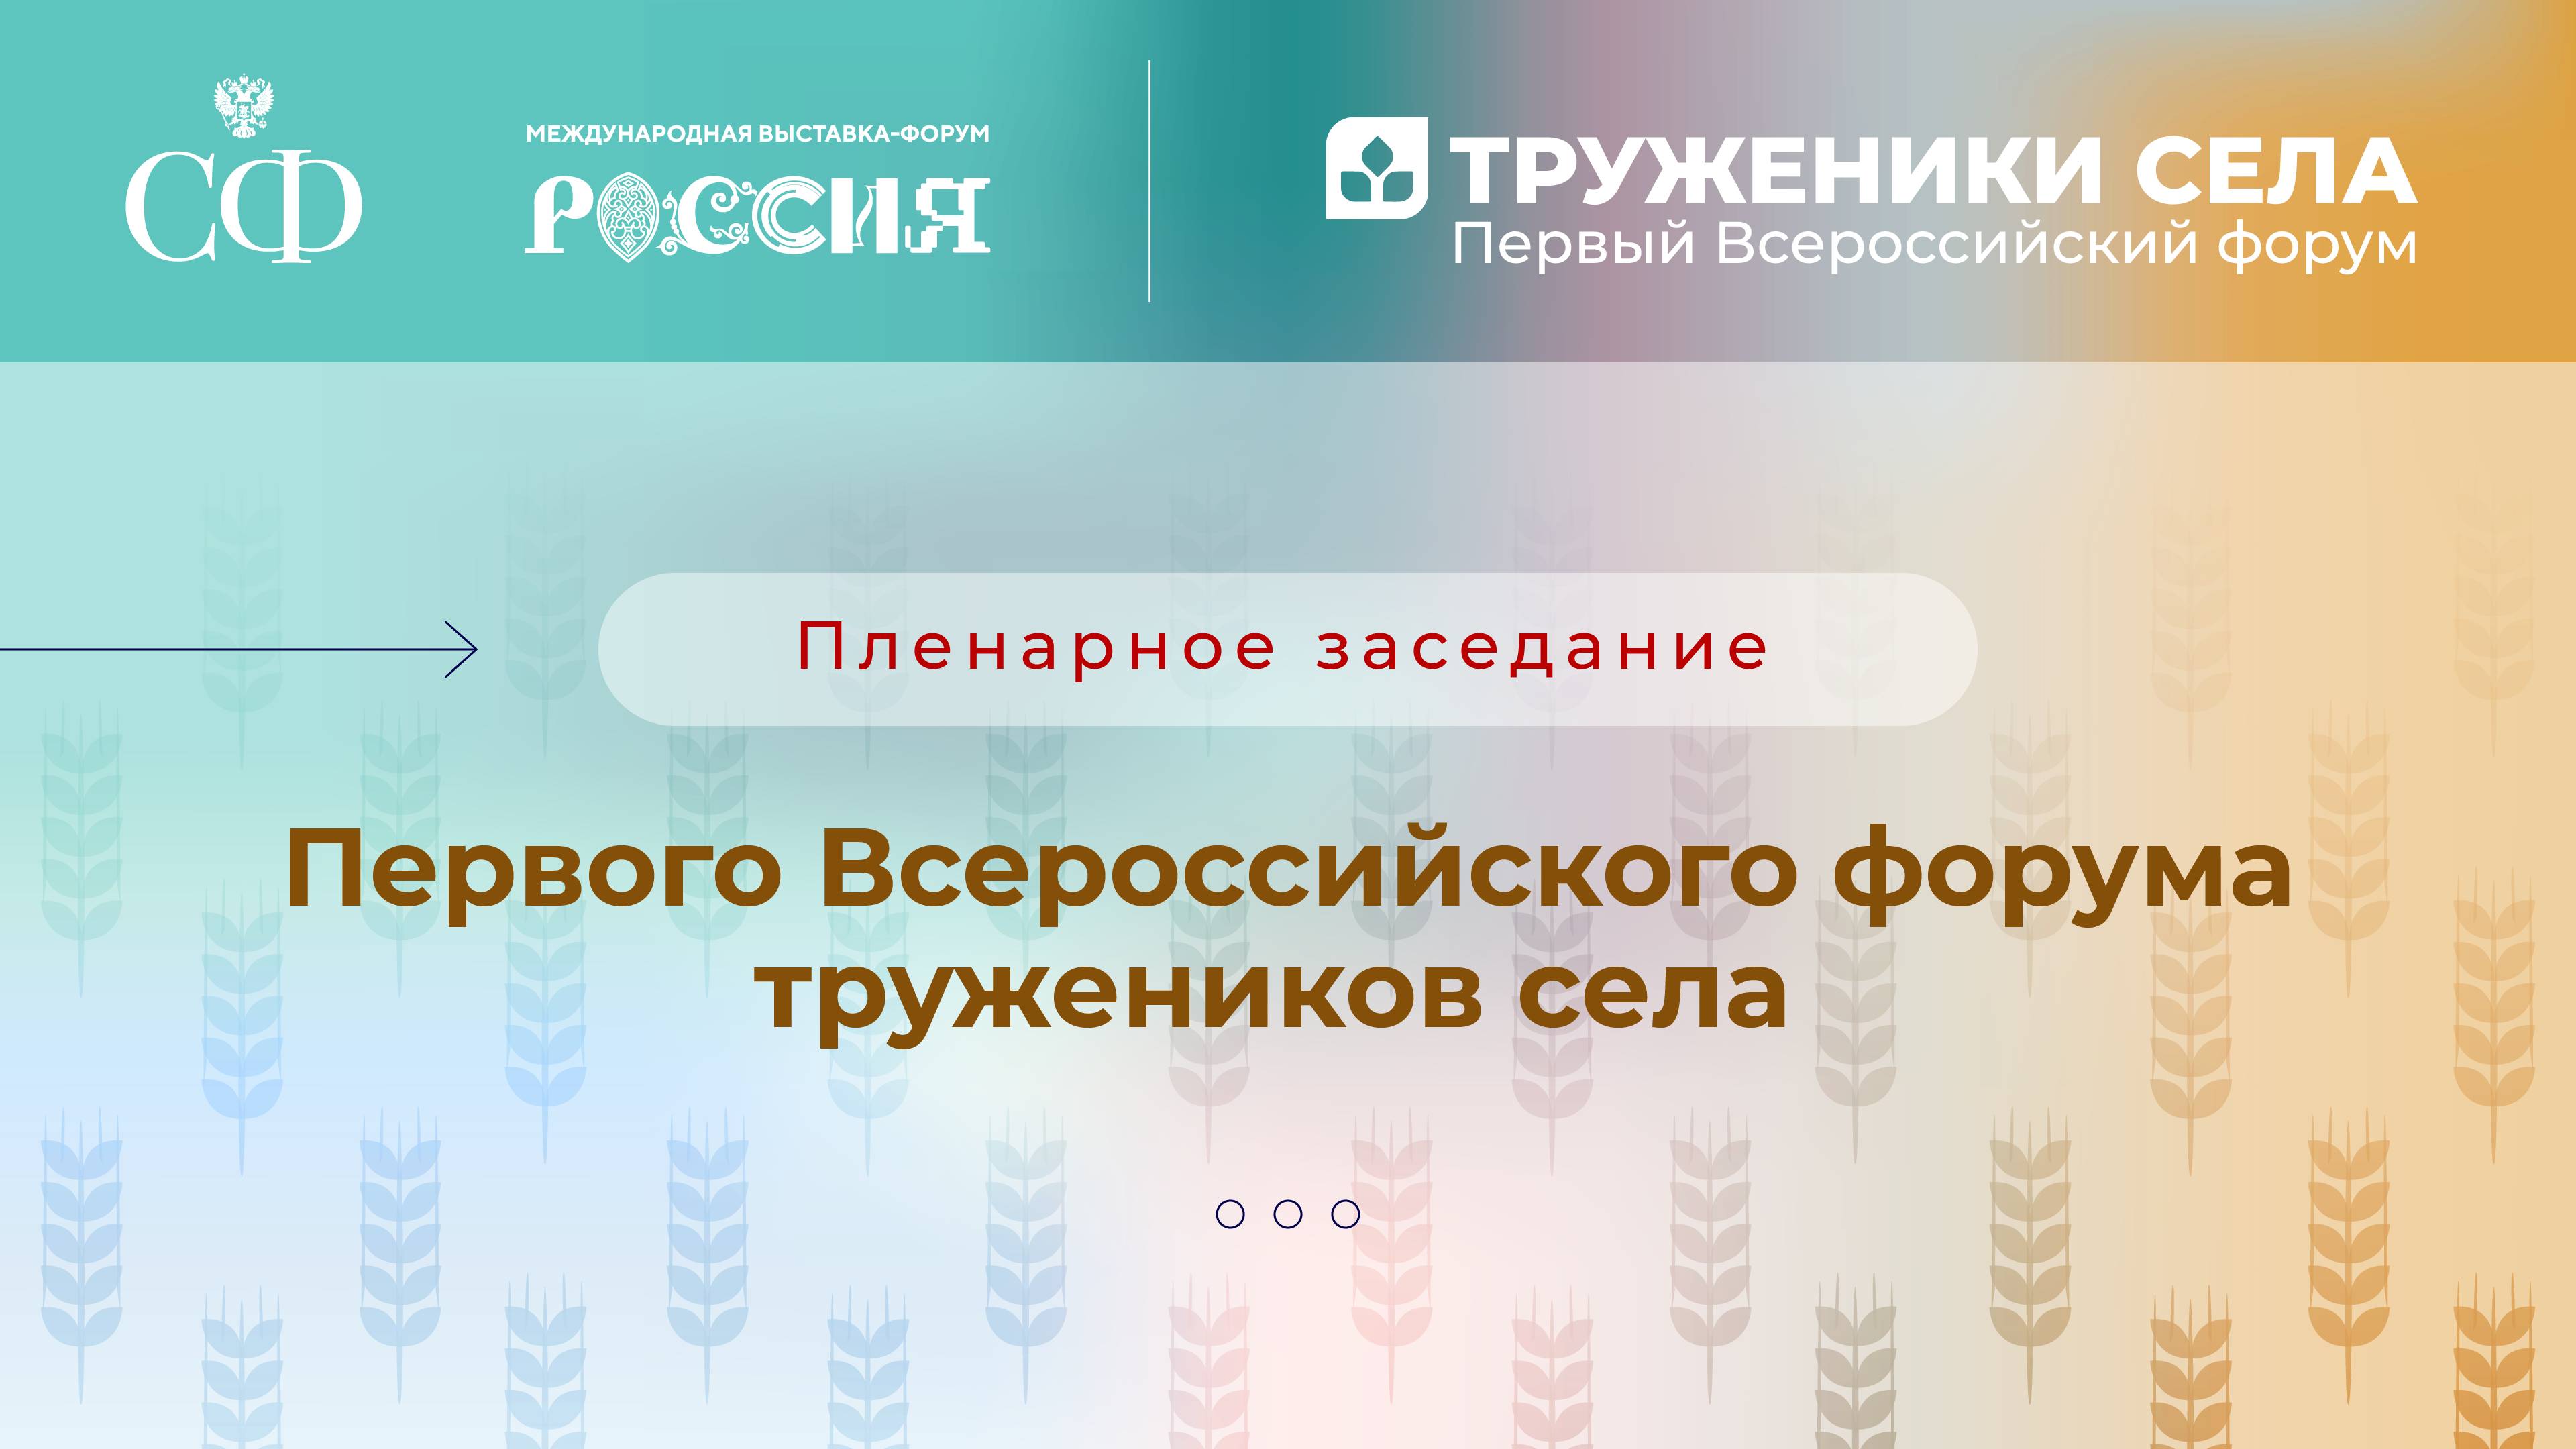 Пленарное заседание Первого Всероссийского форума тружеников села